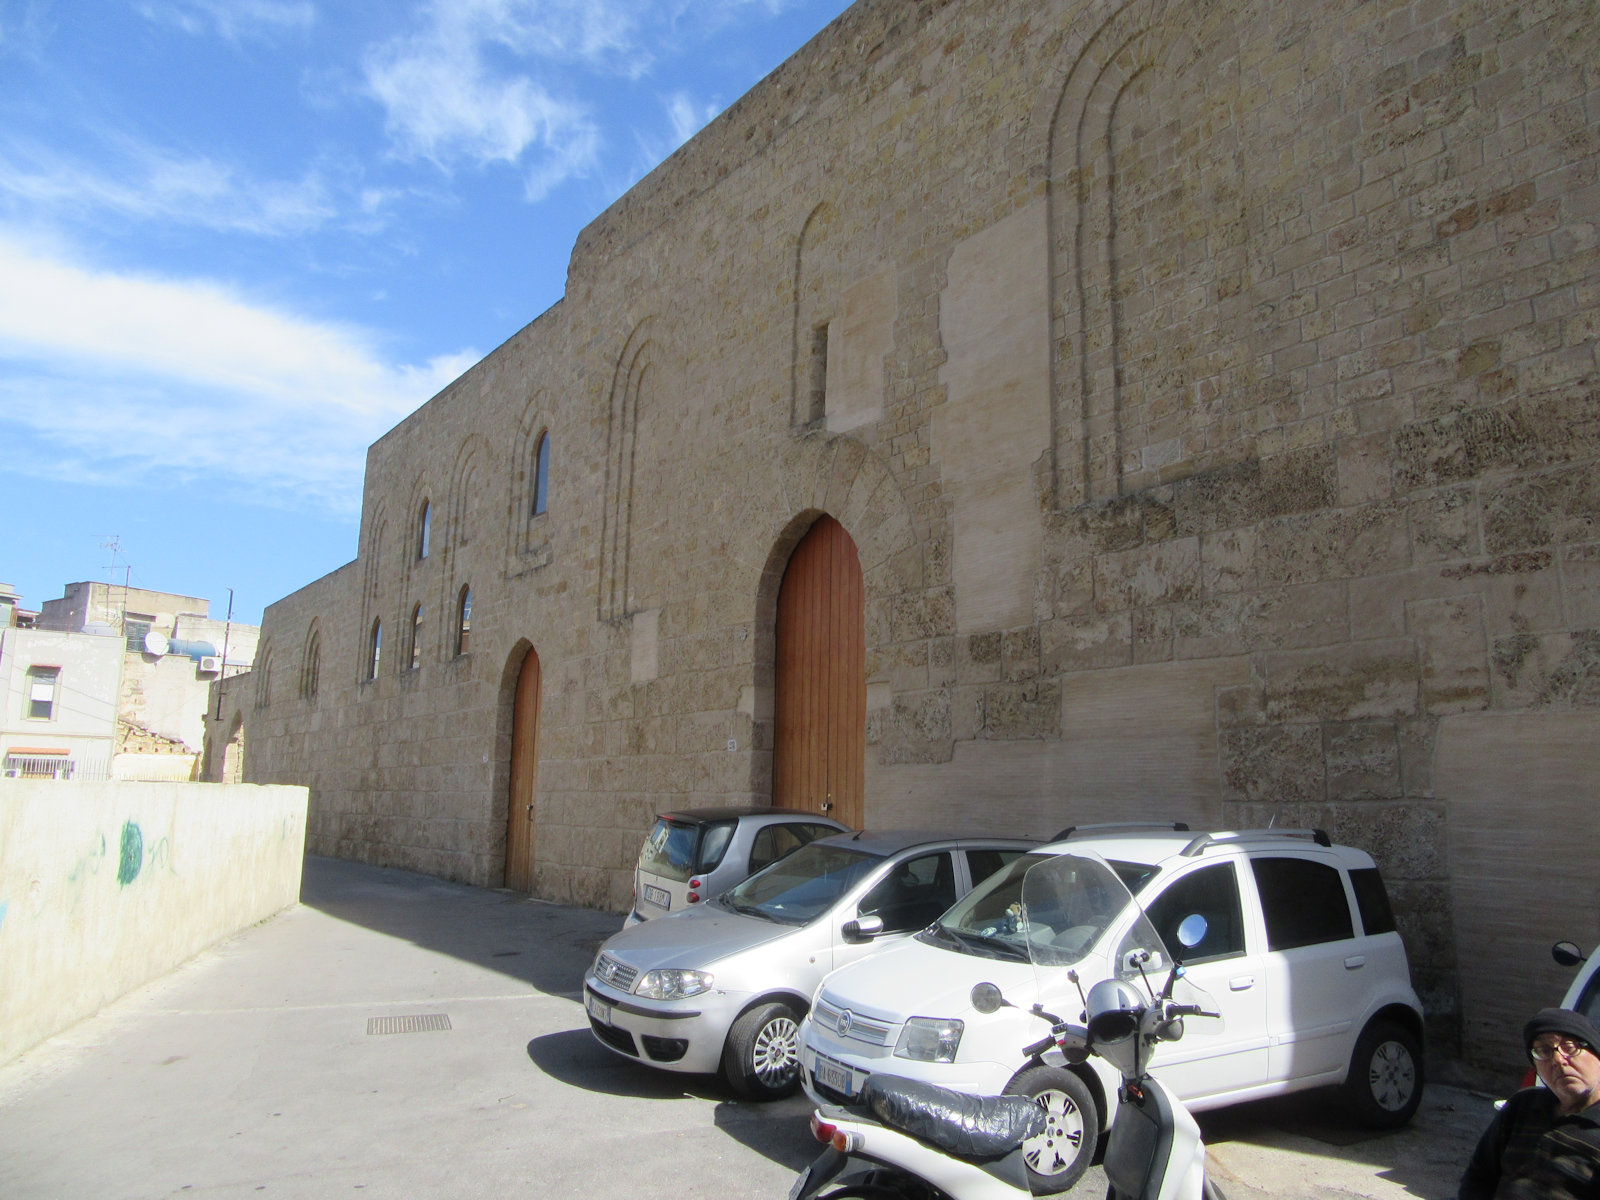 Castello di Maredolce in Palermo, noch in Renovierung begriffen und deshalb unzugänglich